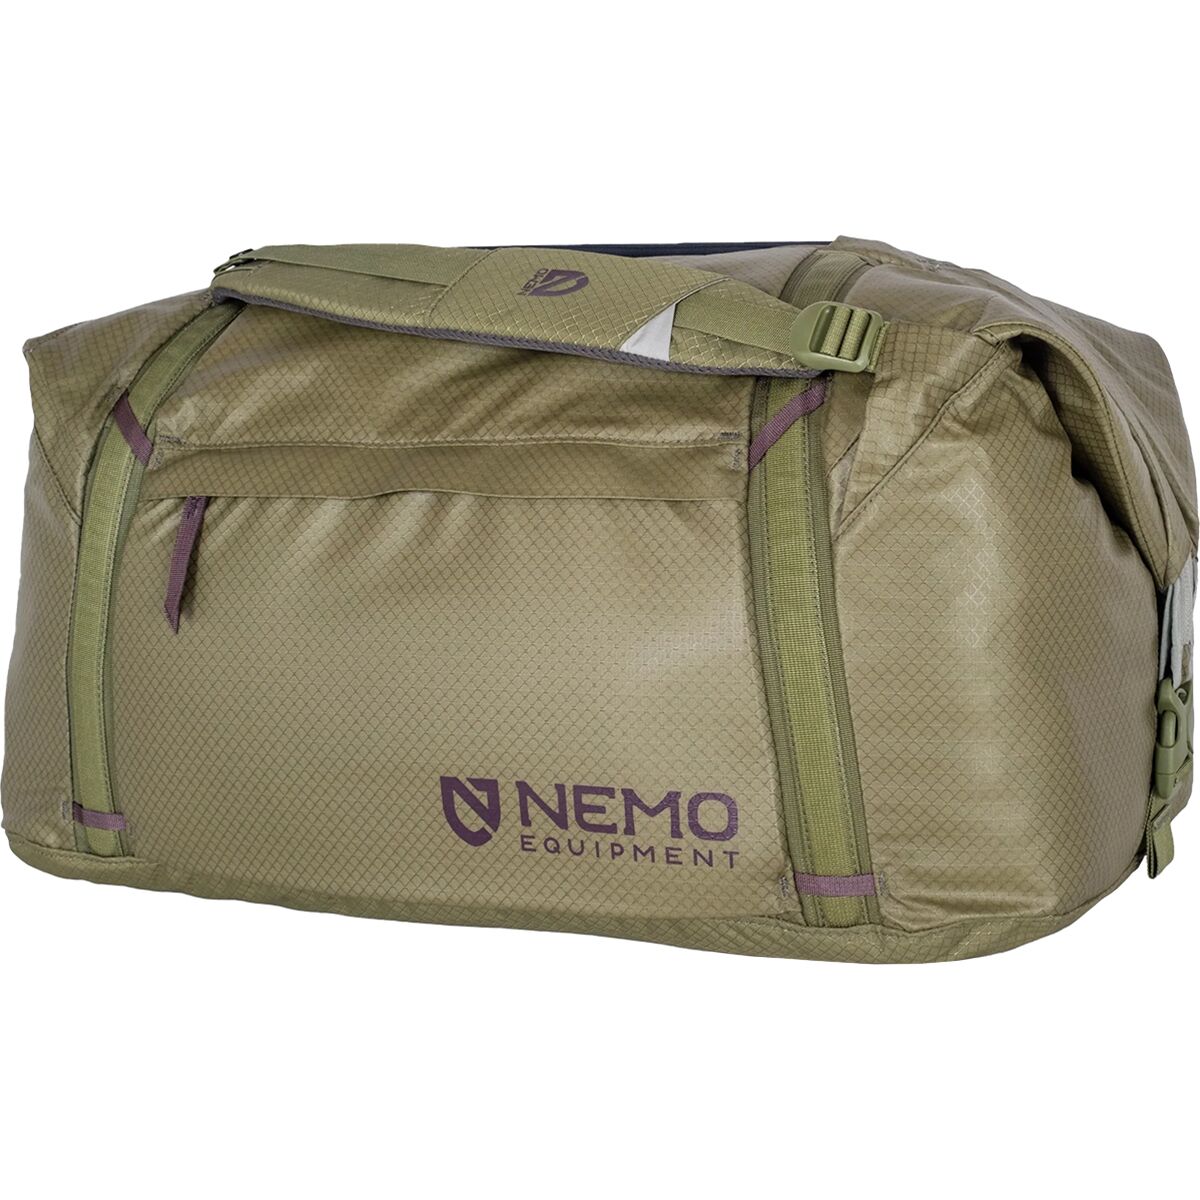 Двойная трансформируемая спортивная сумка объемом 70 л Nemo Equipment Inc., цвет nova